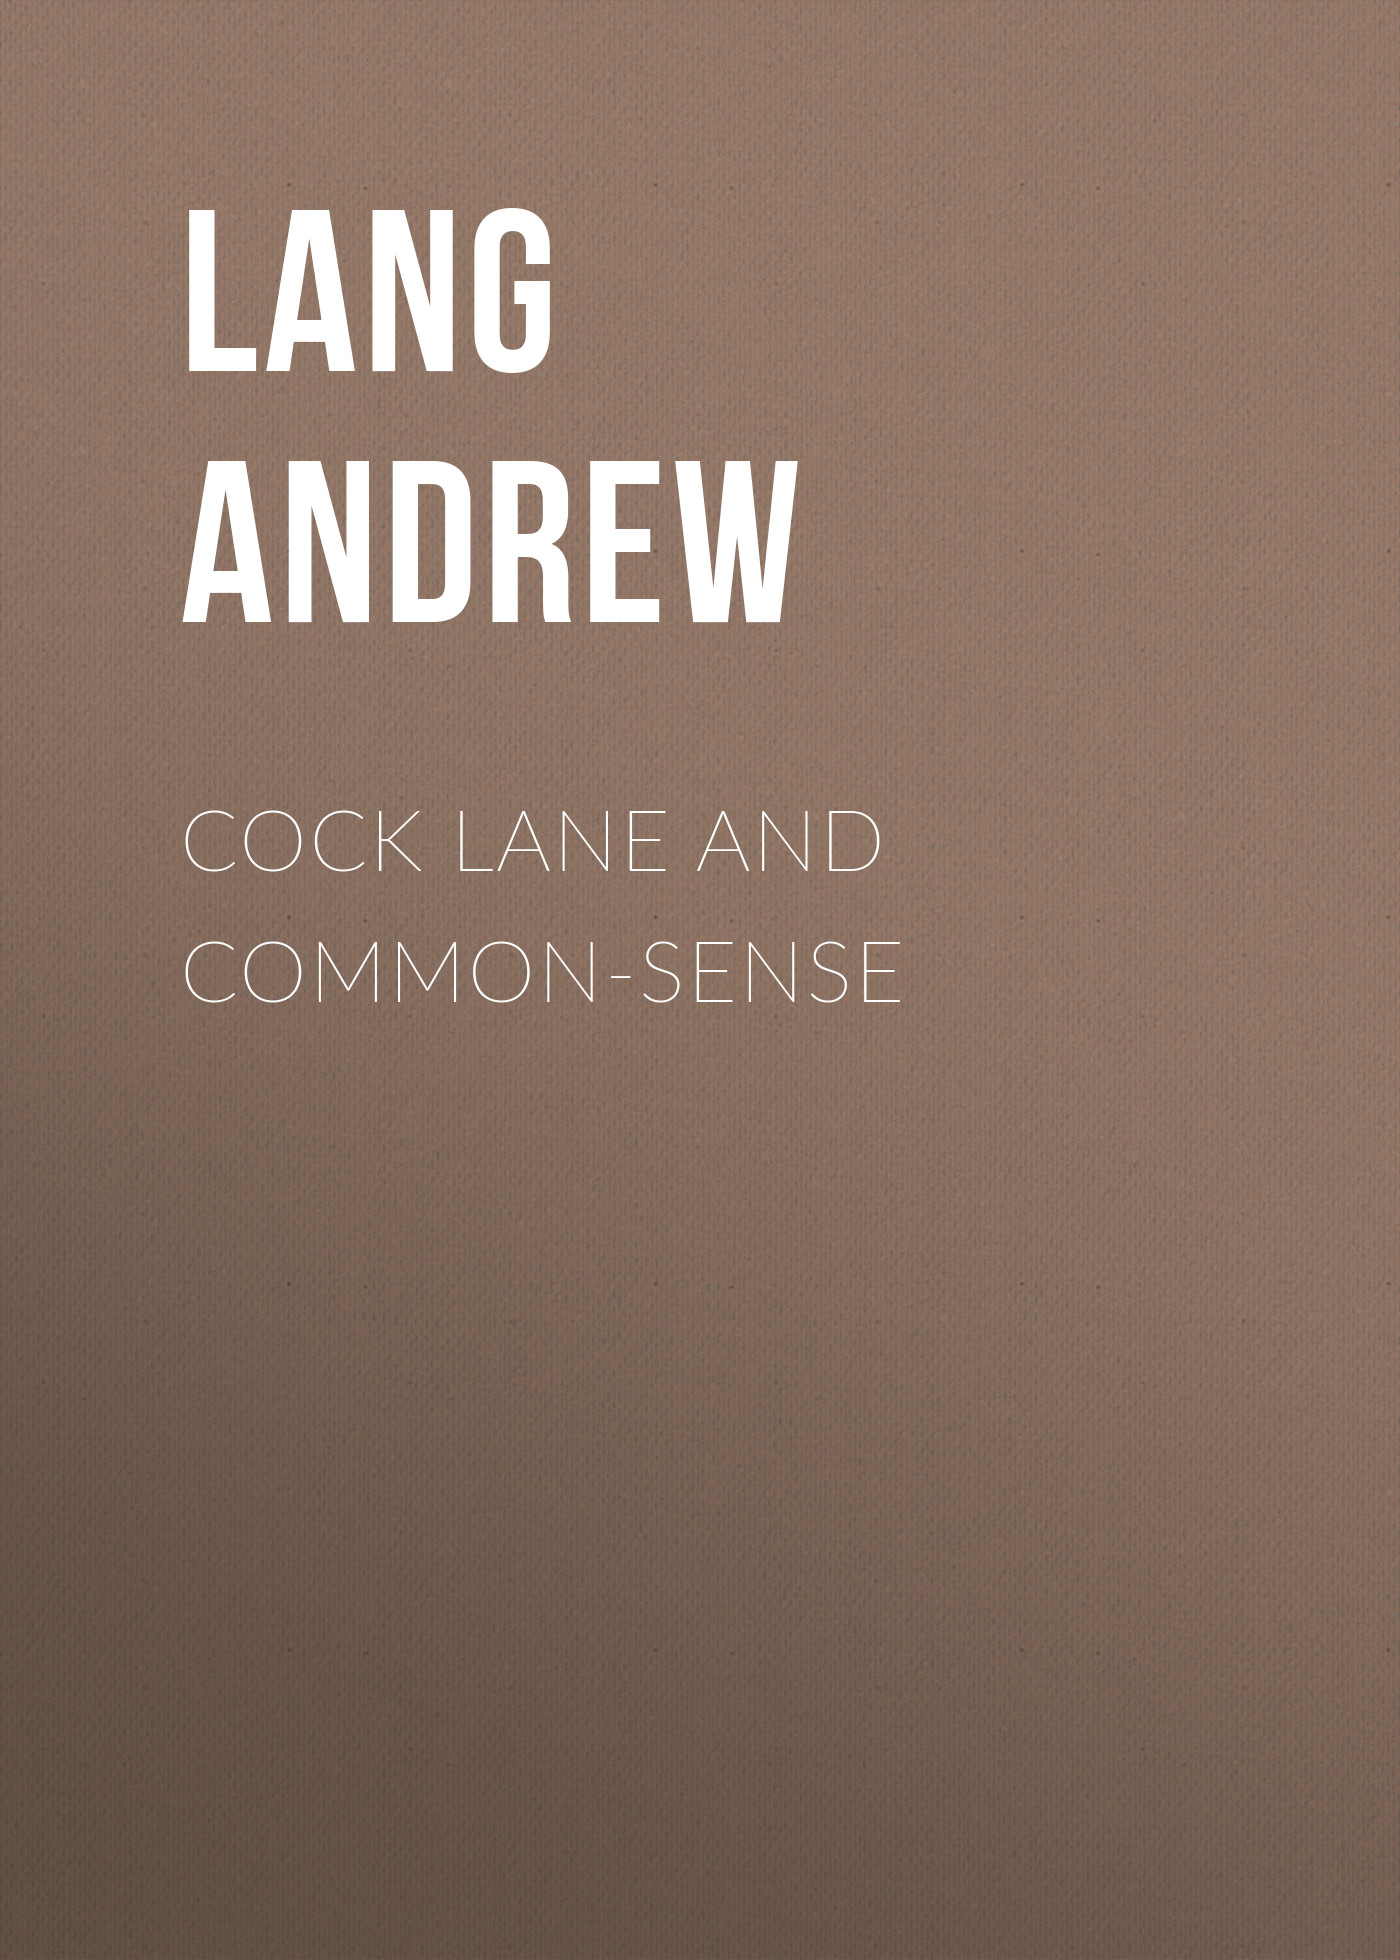 Книга Cock Lane and Common-Sense из серии , созданная Andrew Lang, может относится к жанру Зарубежная старинная литература, Зарубежная классика. Стоимость электронной книги Cock Lane and Common-Sense с идентификатором 25230108 составляет 0 руб.